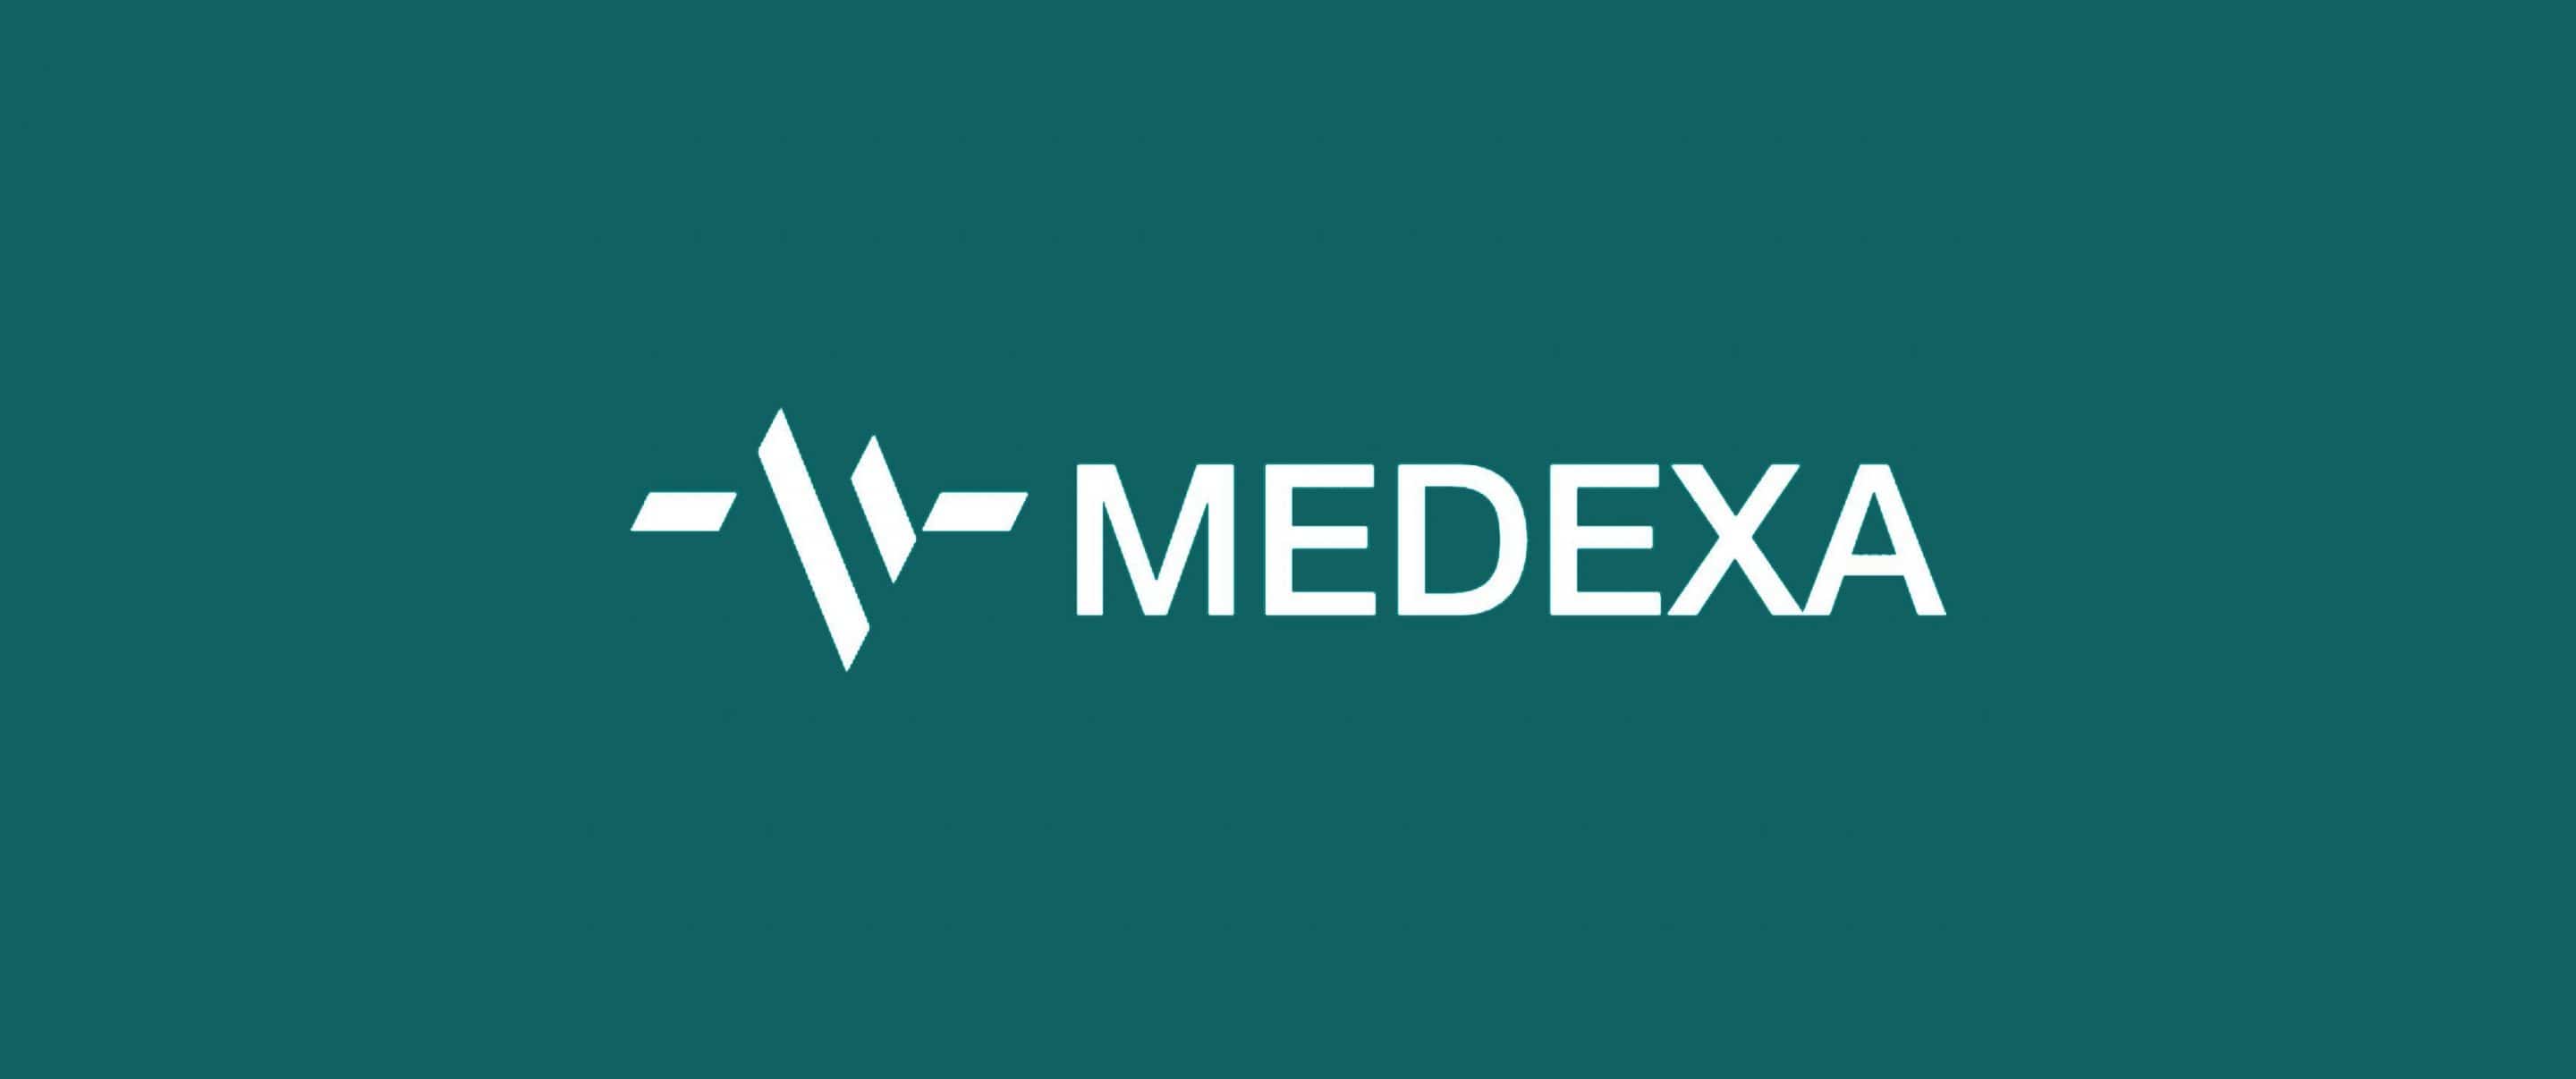 (c) Medexa.com